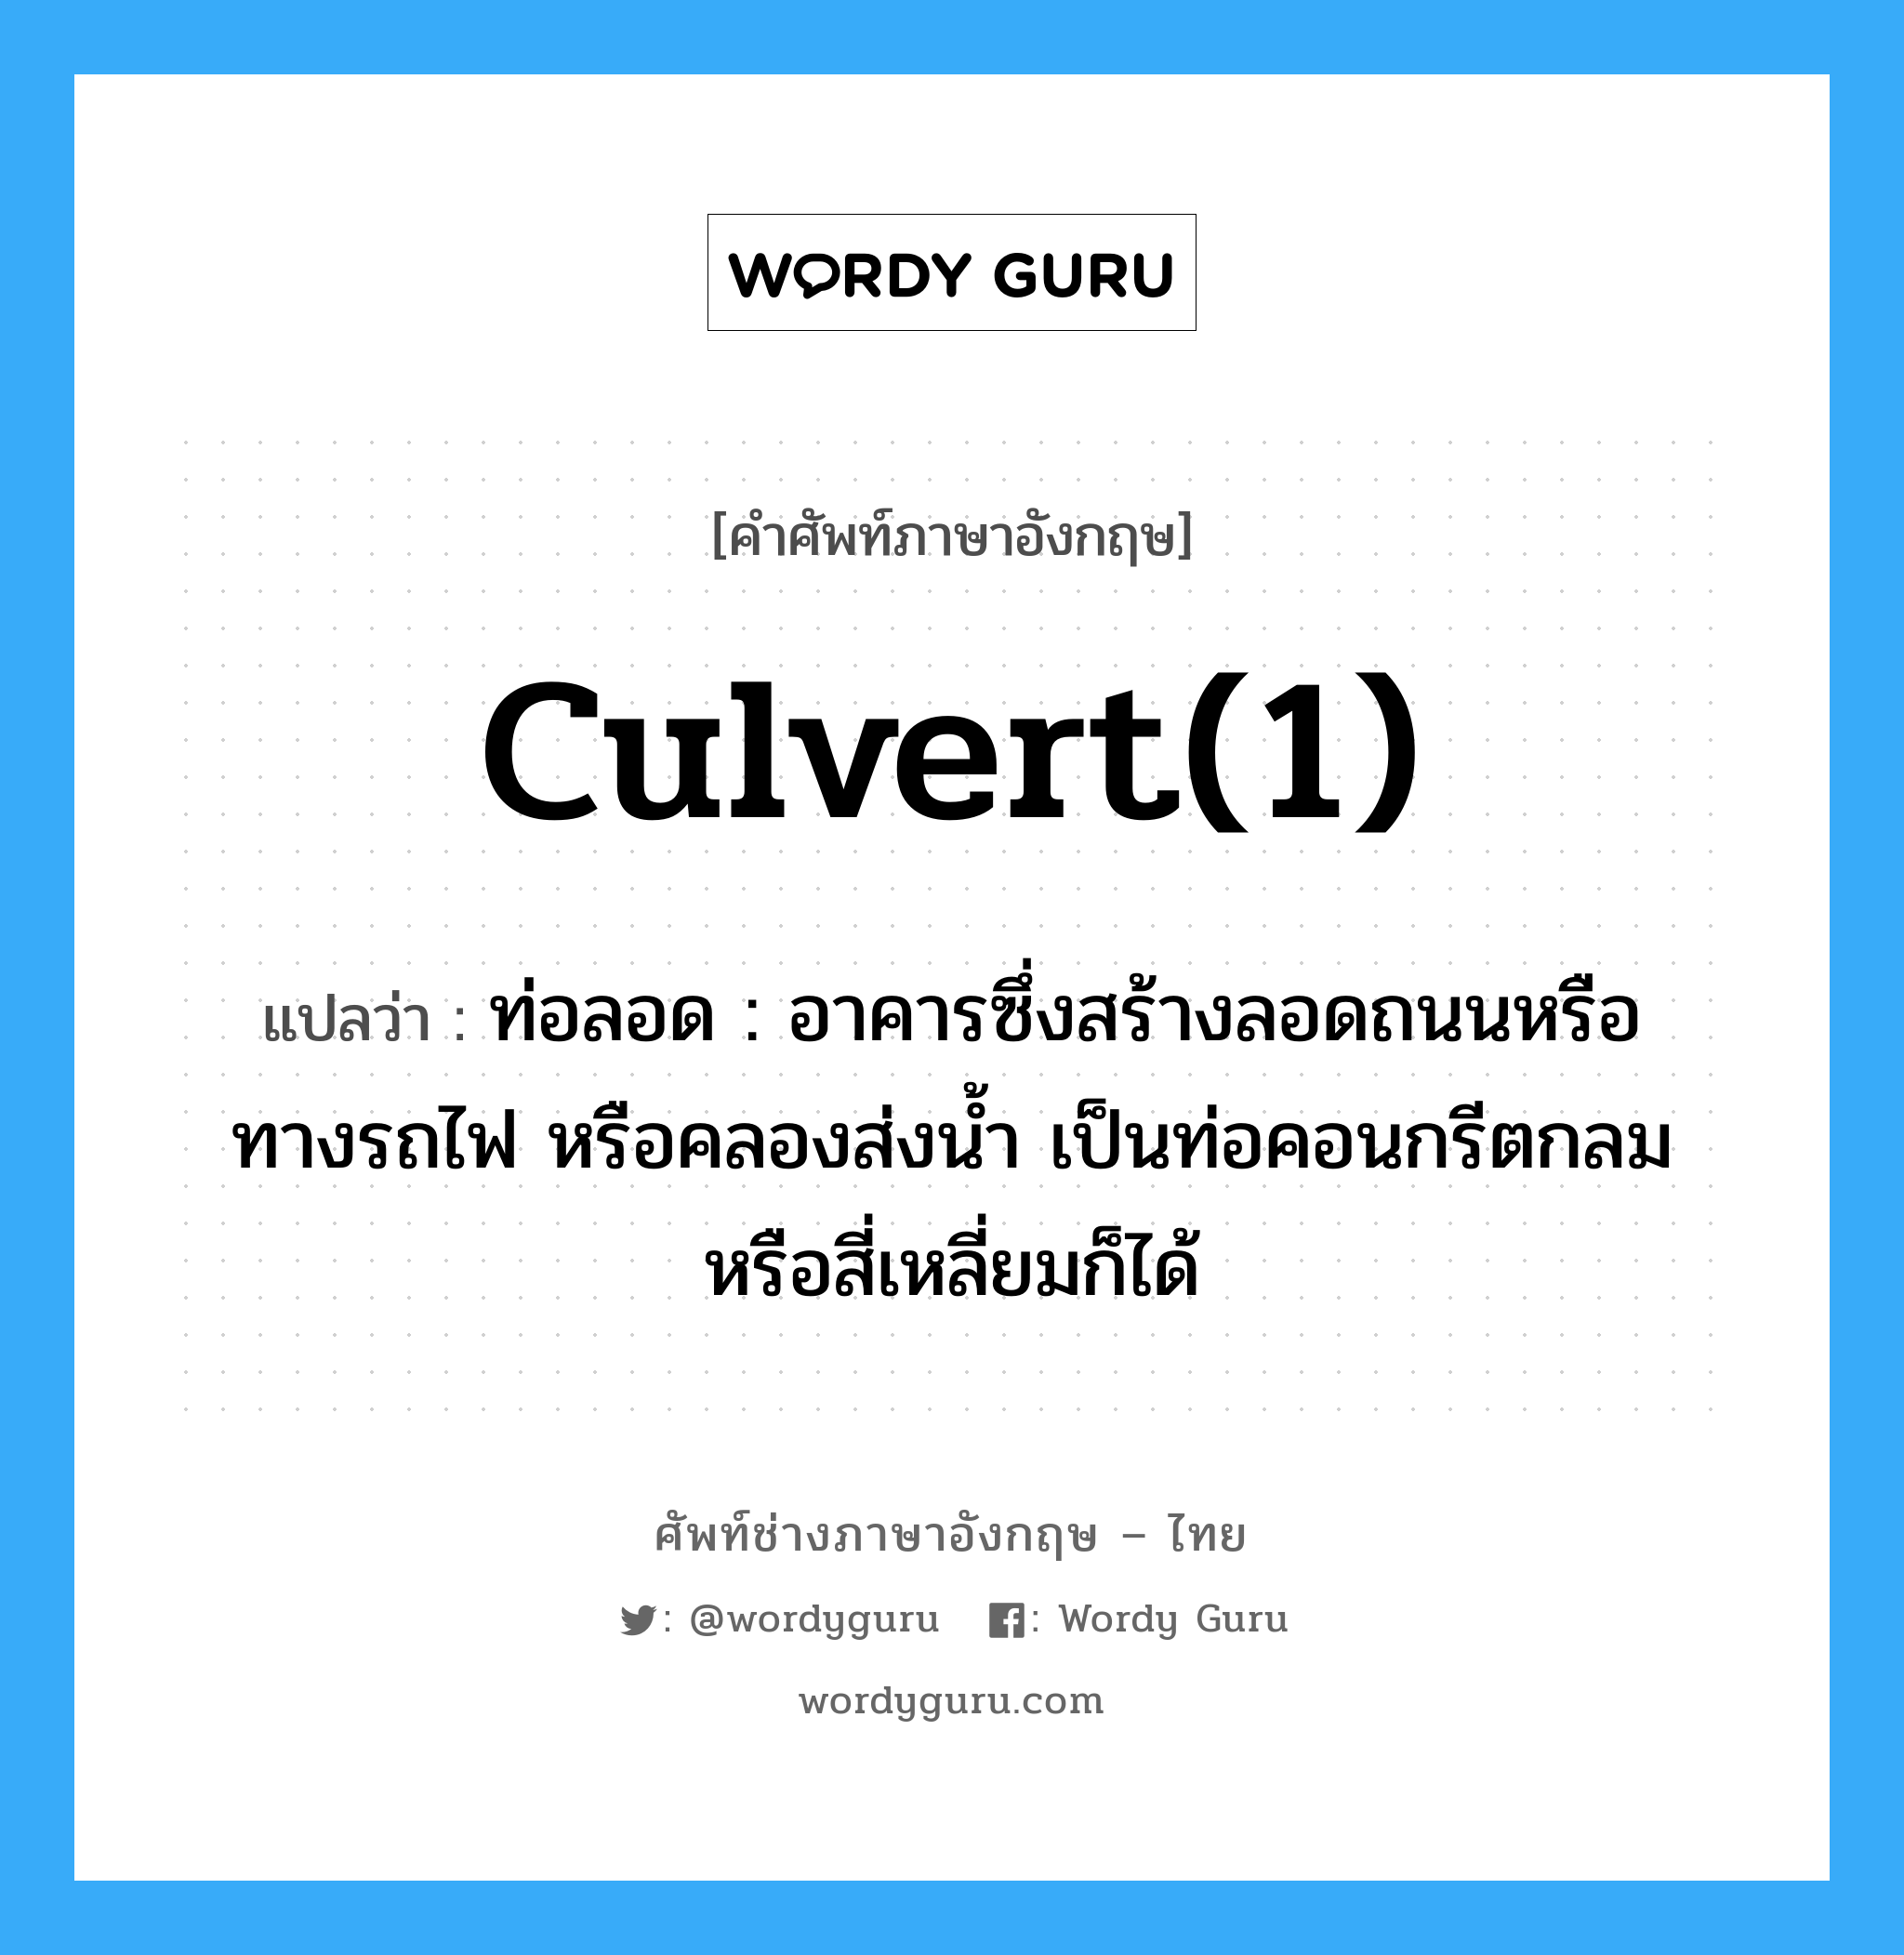 culvert(1) แปลว่า?, คำศัพท์ช่างภาษาอังกฤษ - ไทย culvert(1) คำศัพท์ภาษาอังกฤษ culvert(1) แปลว่า ท่อลอด : อาคารซึ่งสร้างลอดถนนหรือทางรถไฟ หรือคลองส่งน้ำ เป็นท่อคอนกรีตกลมหรือสี่เหลี่ยมก็ได้